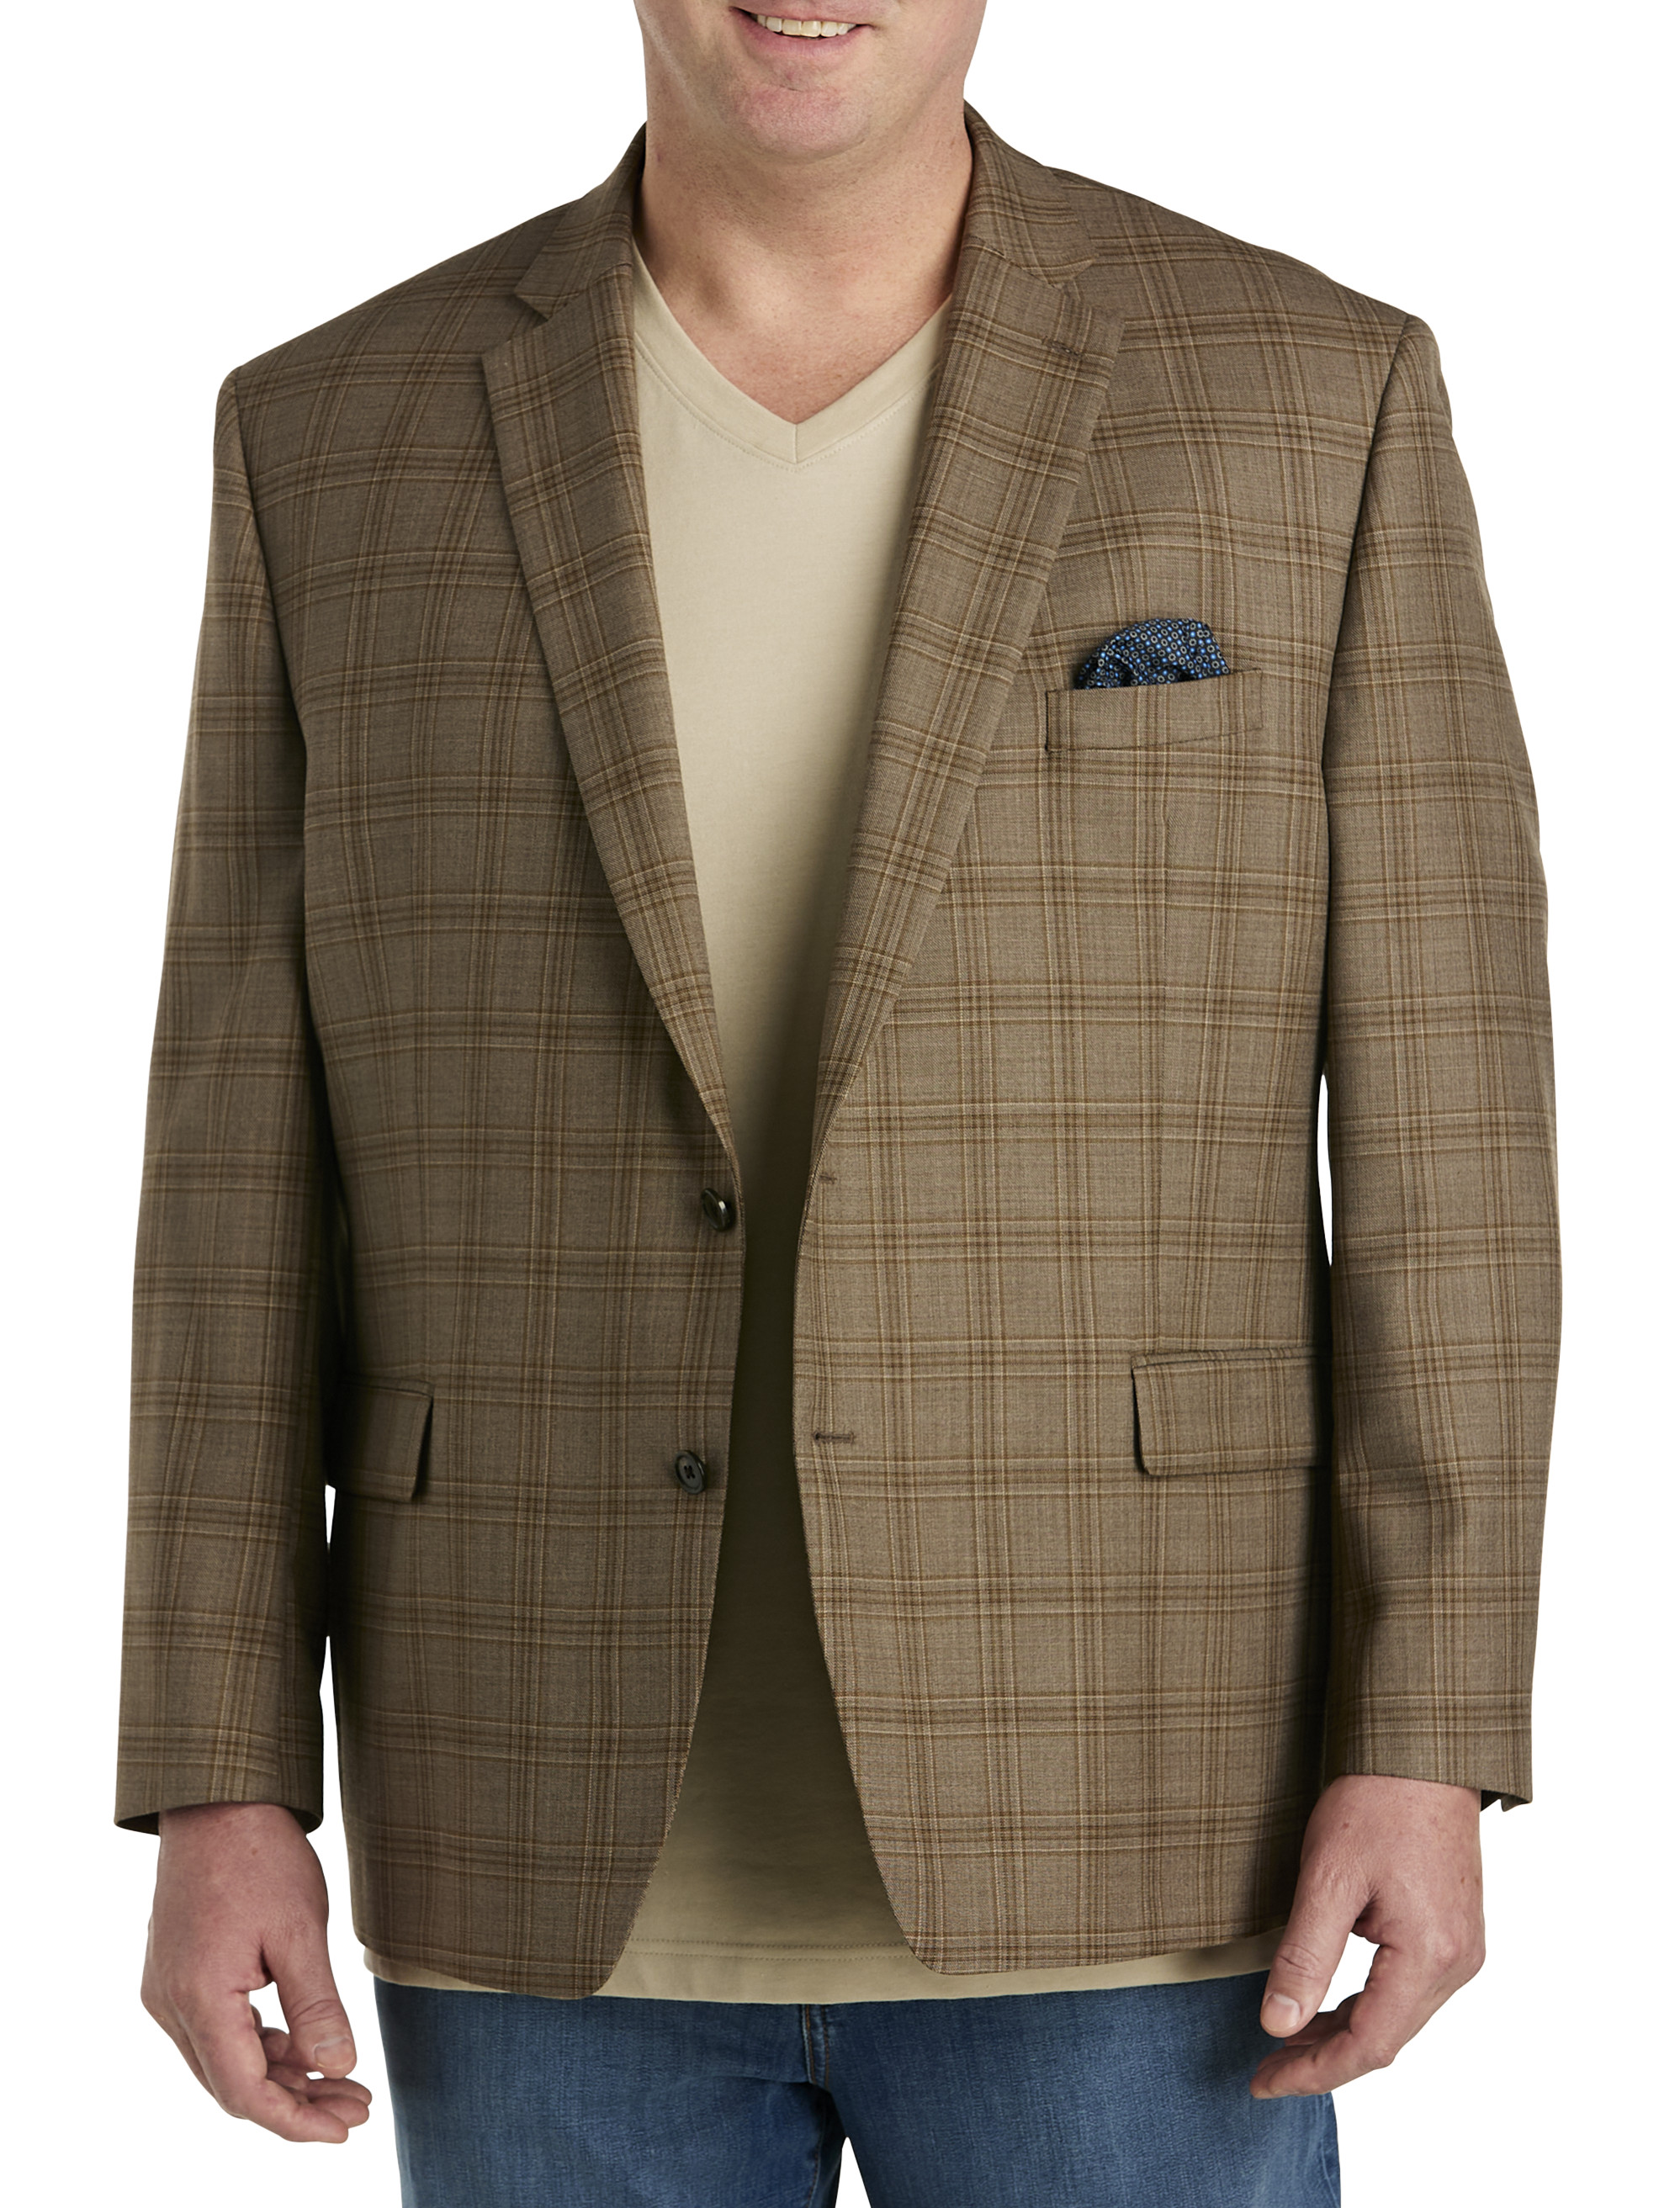 Lauren Ralph Lauren Jackets & Coats | Lauren Ralph Lauren Wool Tweed Brown Blazer Size 8 | Color: Brown | Size: 8 | Kmresale's Closet